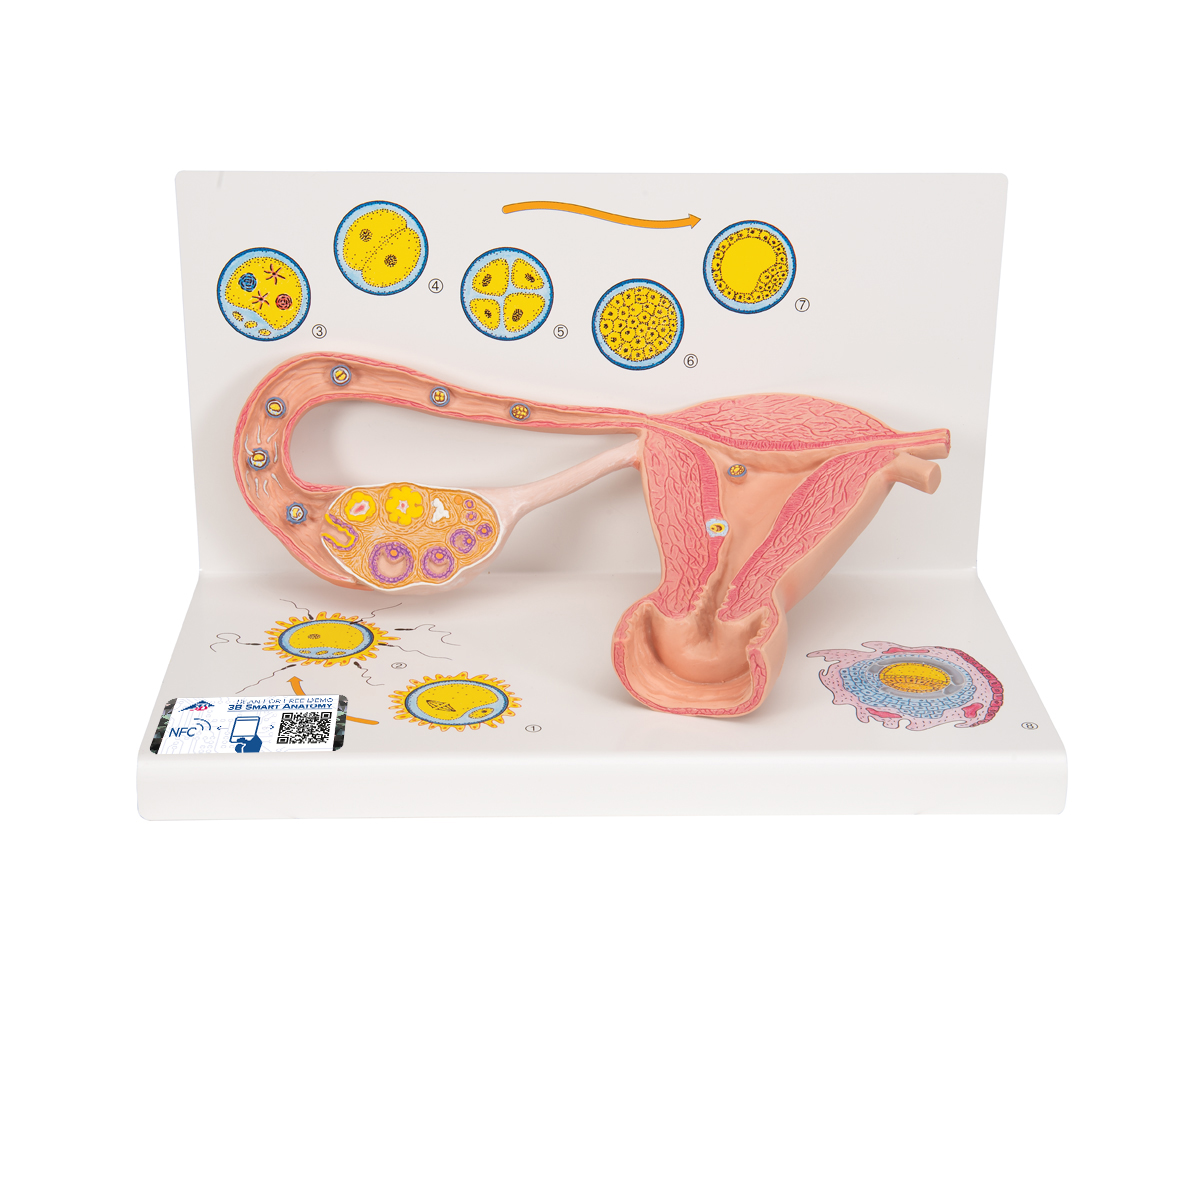 Ovare cu trompe uterine - prezentare stagii de fertilizare, material didactic biologie